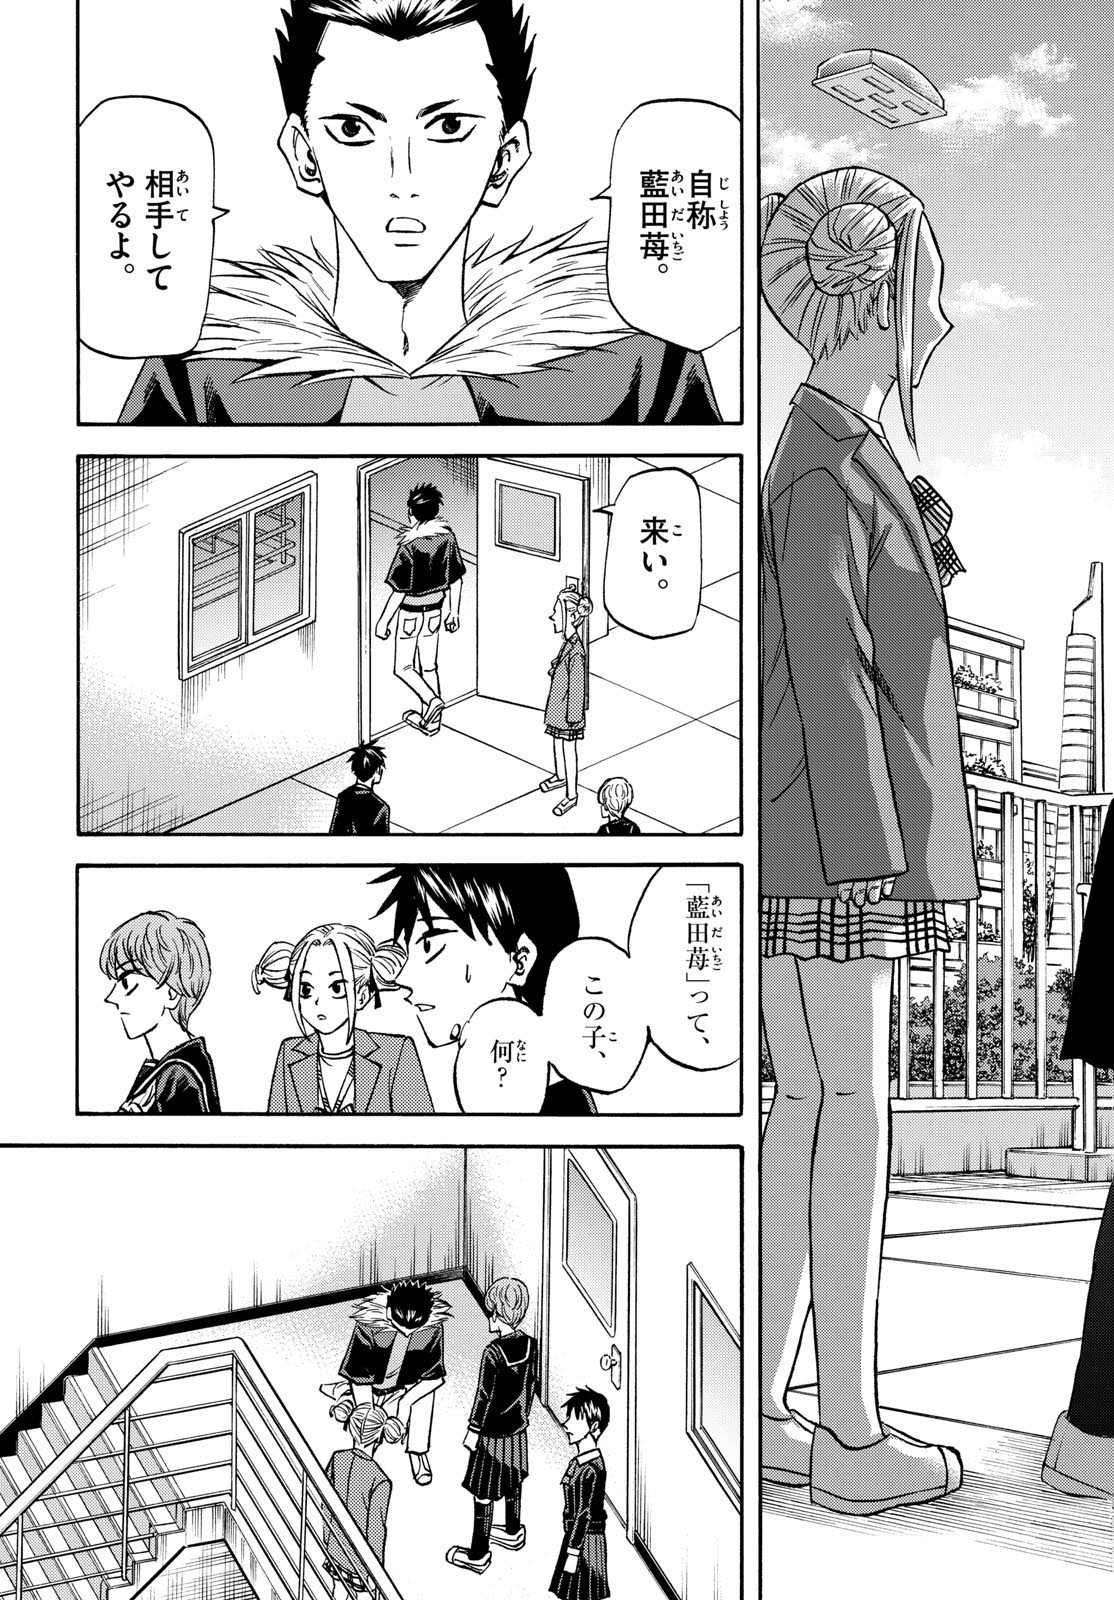 Tatsu to Ichigo - Chapter 183 - Page 3